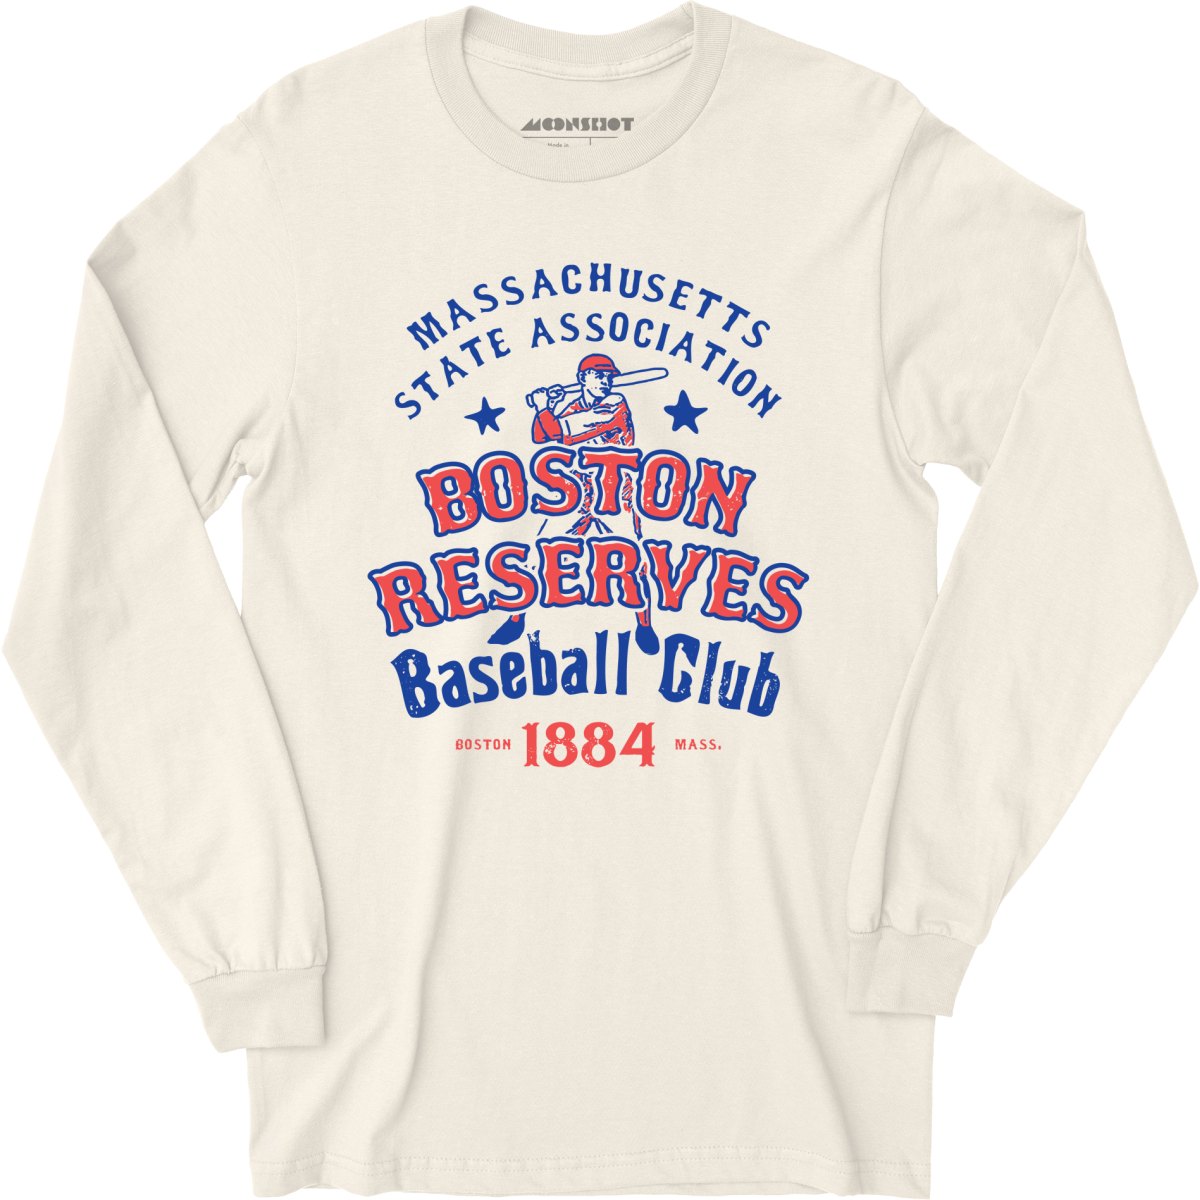 red sox baseball t shirt vintage